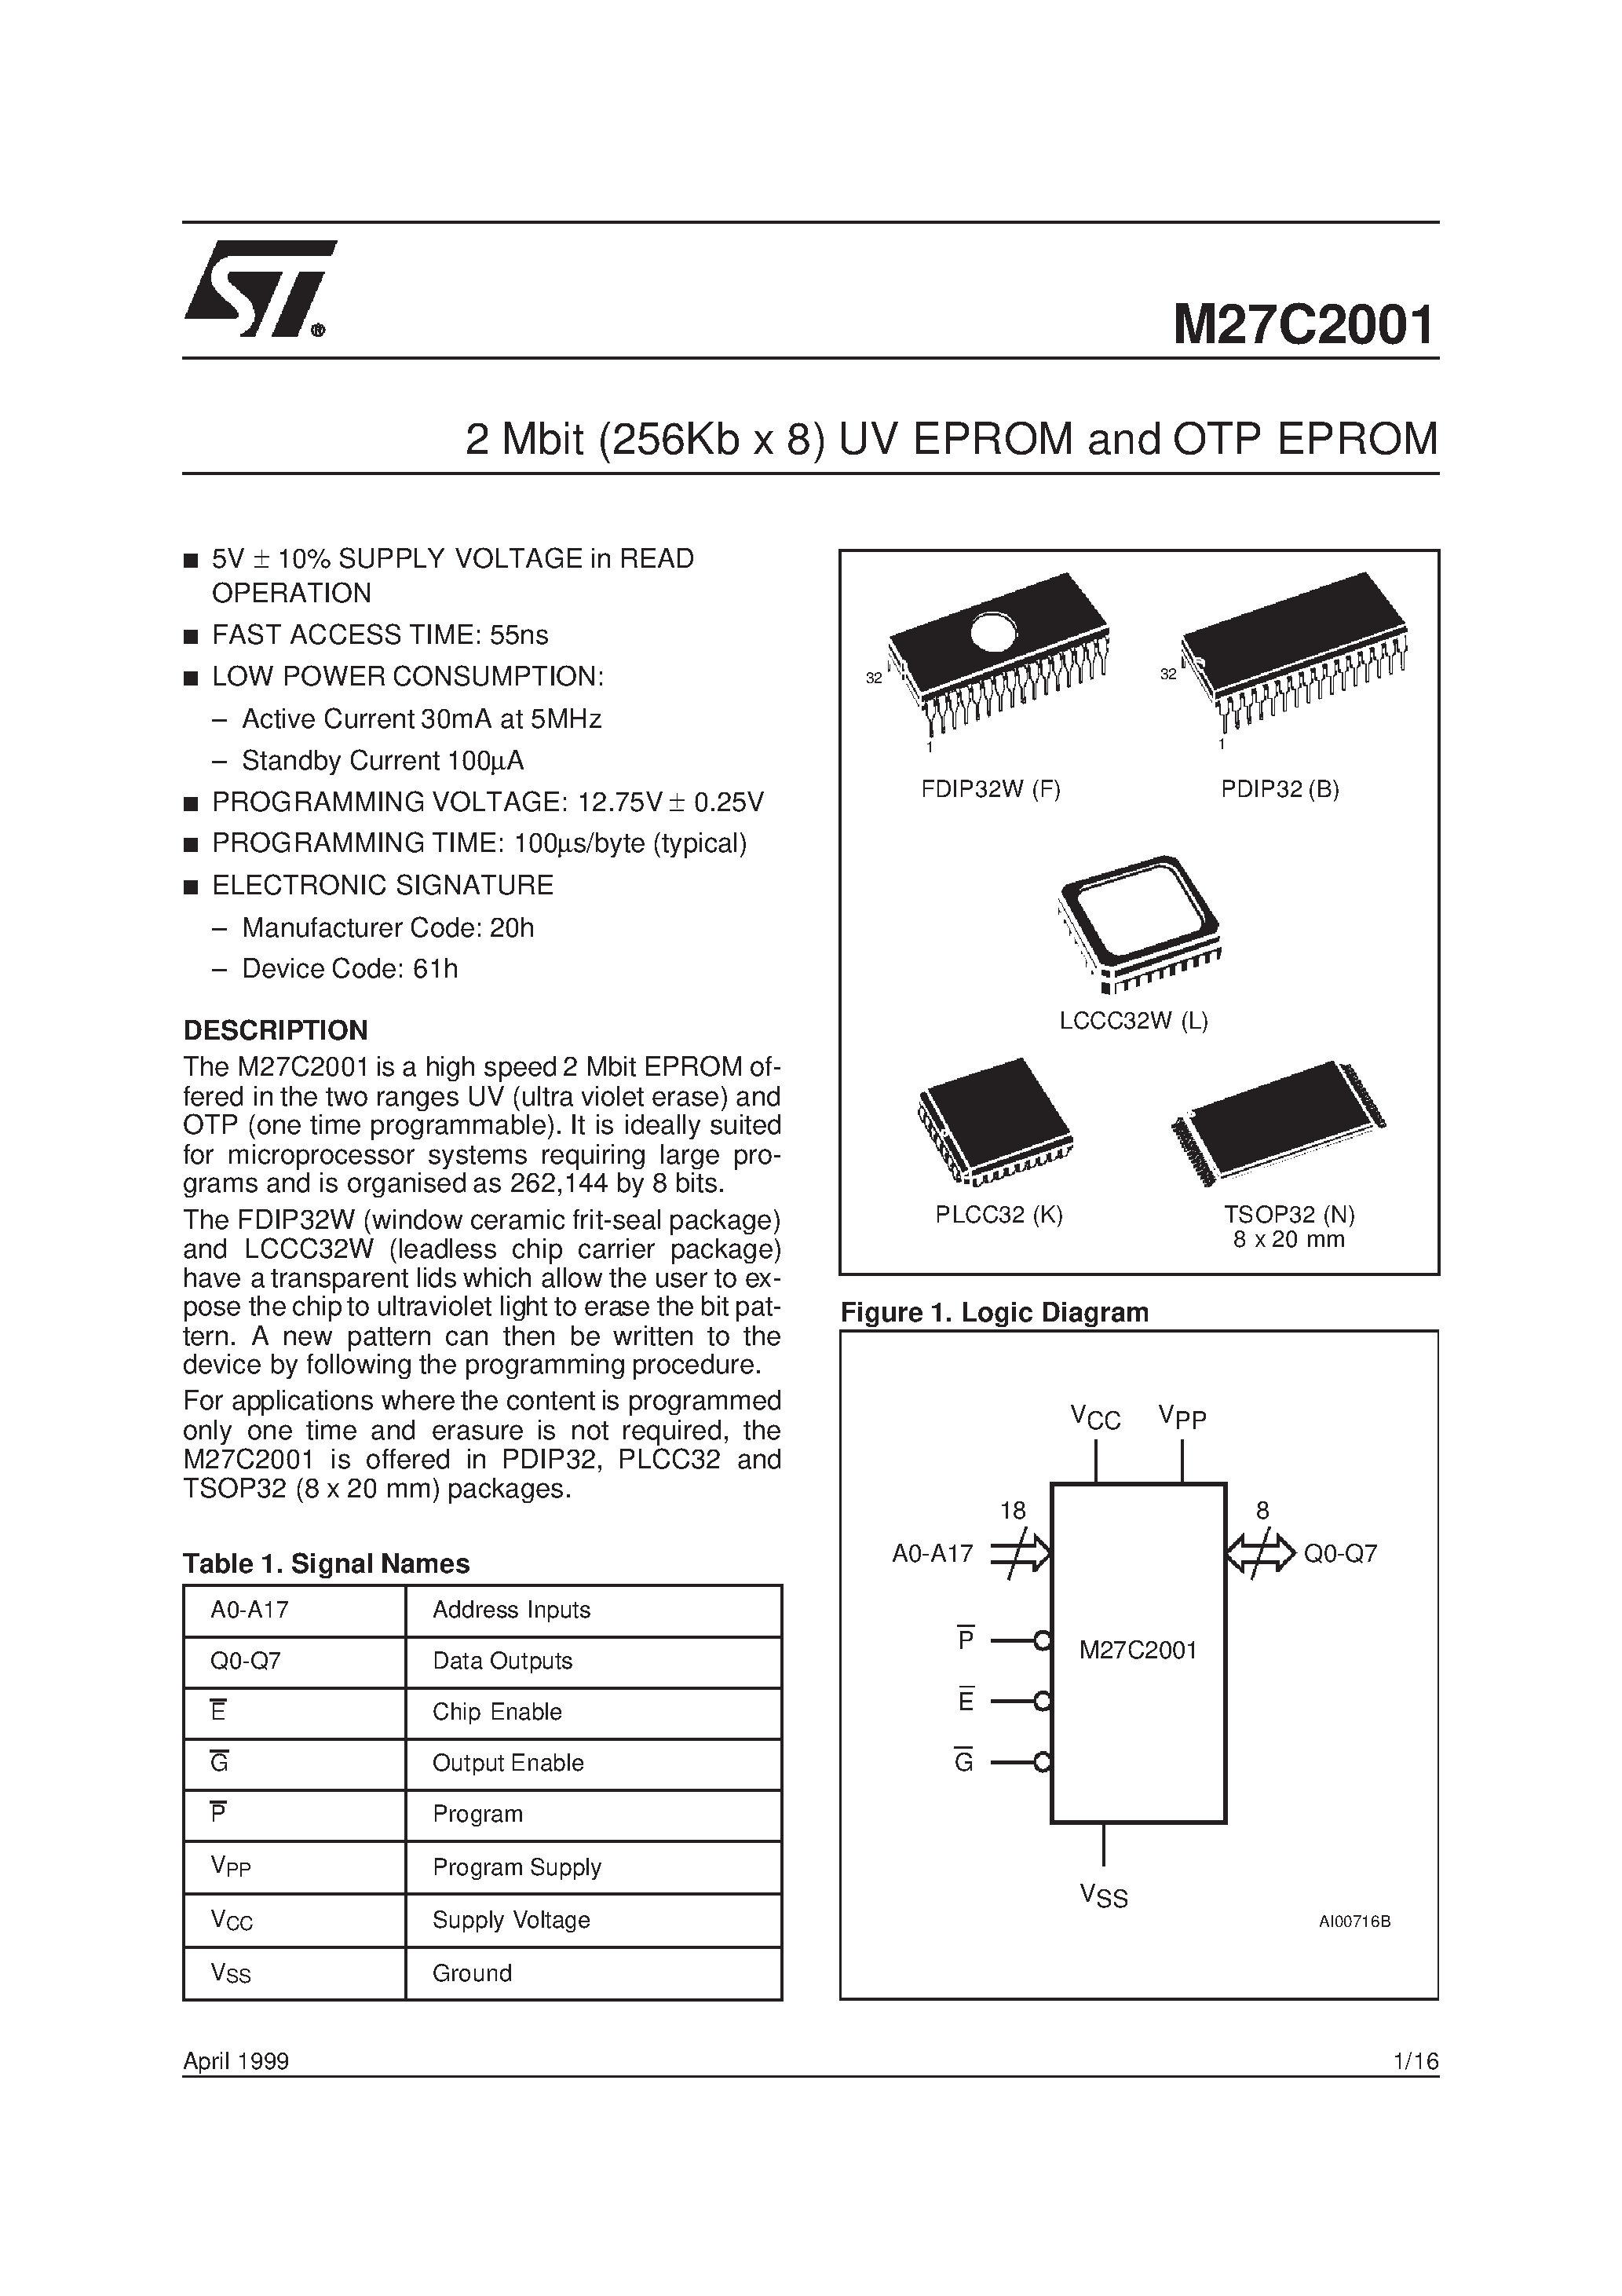 Datasheet M27C2001-10F6X - 2 Mbit 256Kb x 8 UV EPROM and OTP EPROM page 1